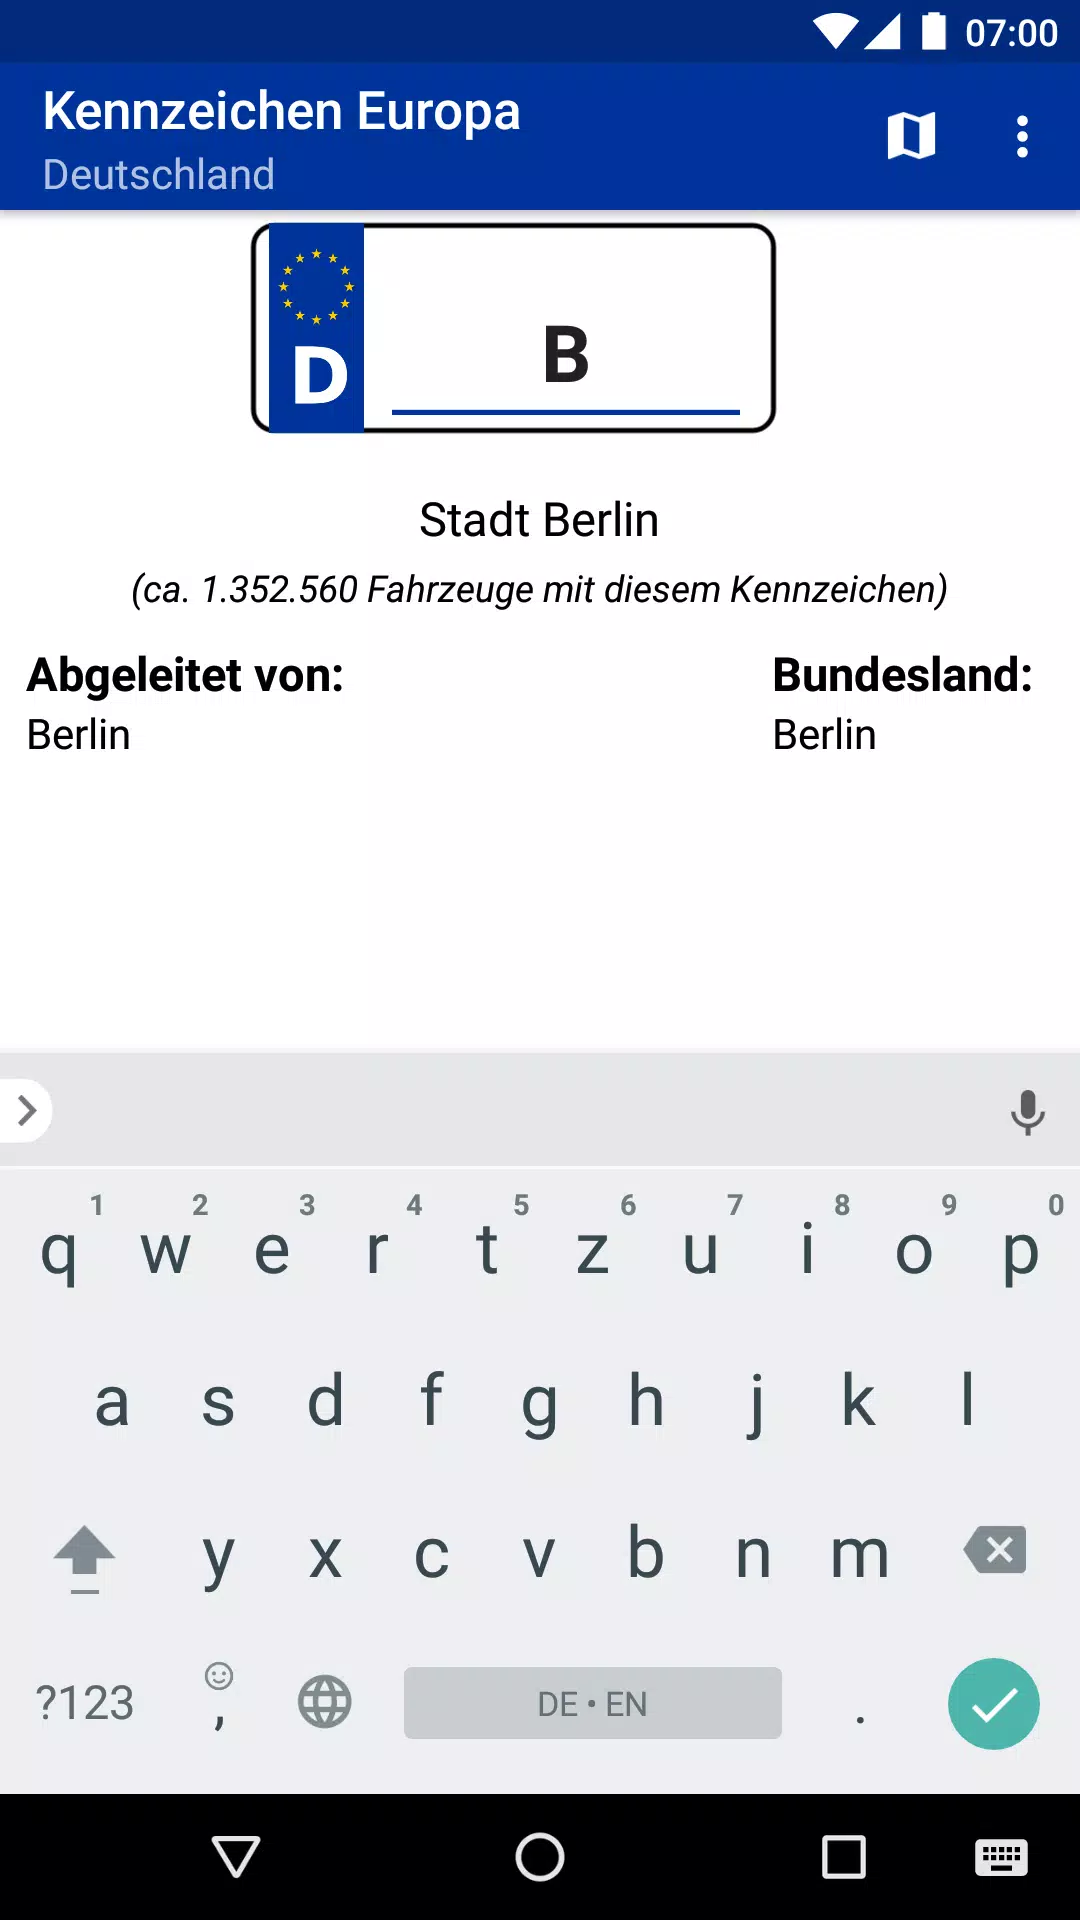 Kennzeichen Europa APK for Android Download